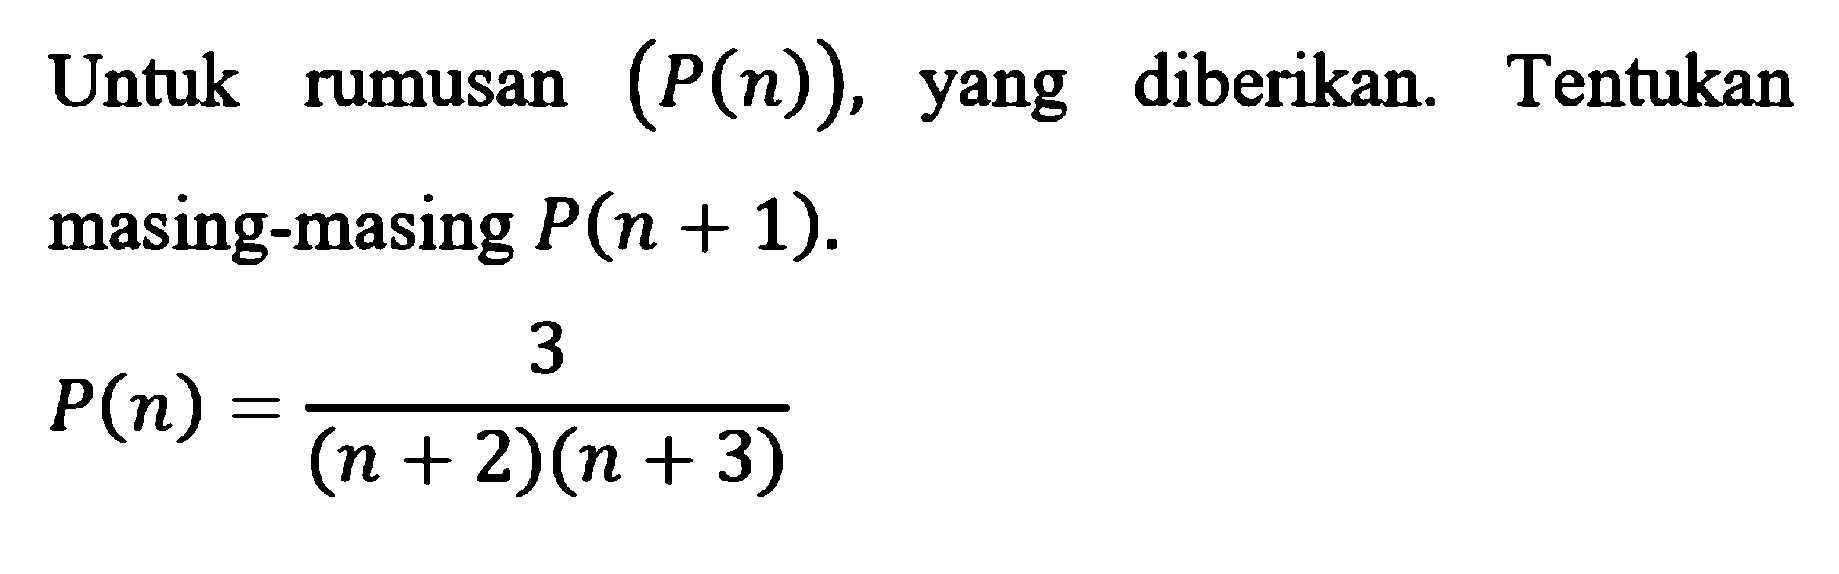 Untuk rumusan (P(n)), diberikan. Tentukan rumusan yang masing-masing P(n+1). P(n)=3/(n + 2)(n + 3)